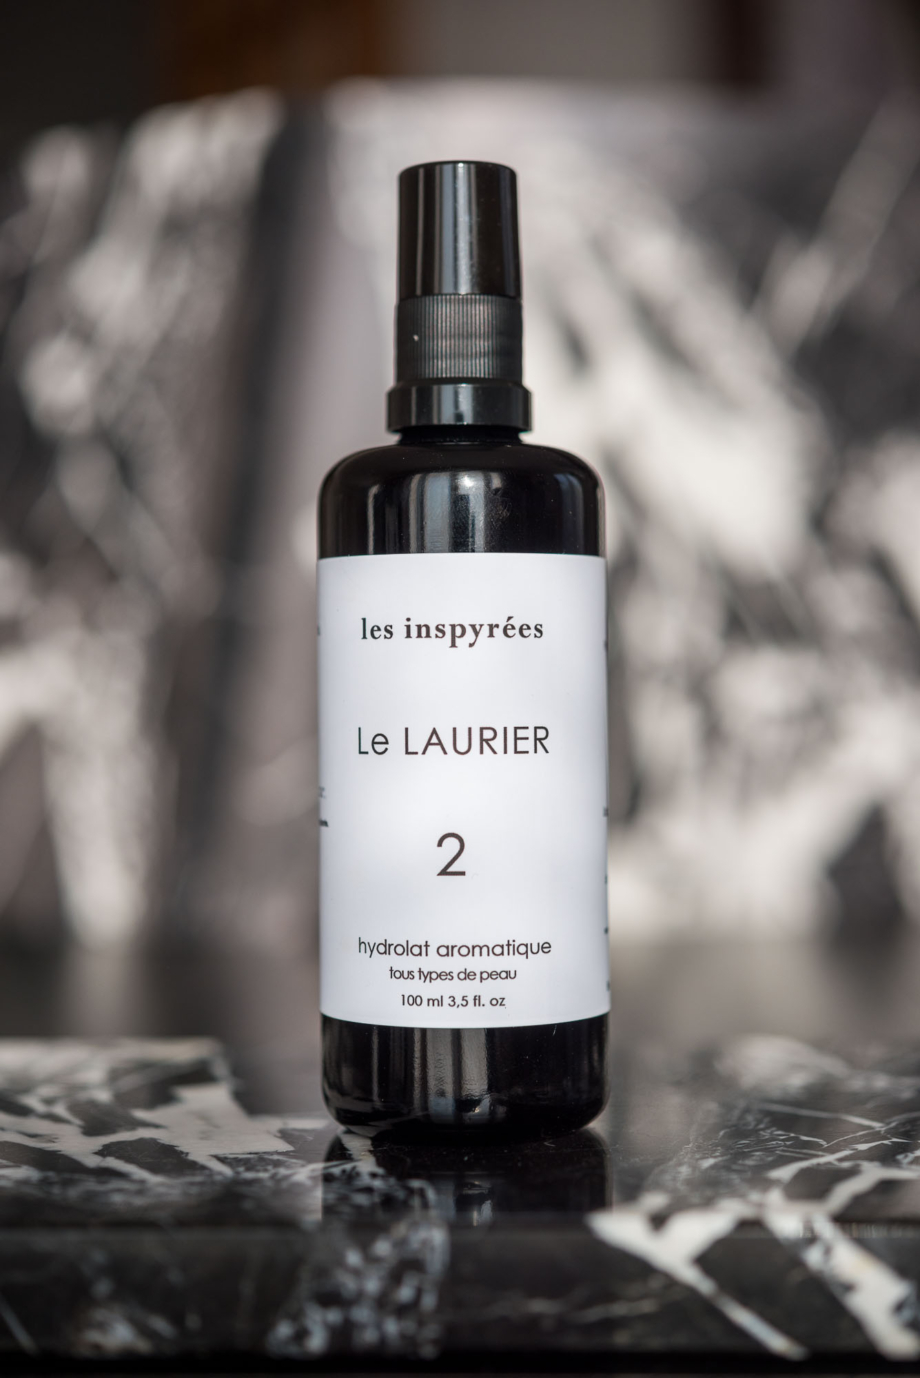 Le LAURIER - Hydrolat aromatique visage